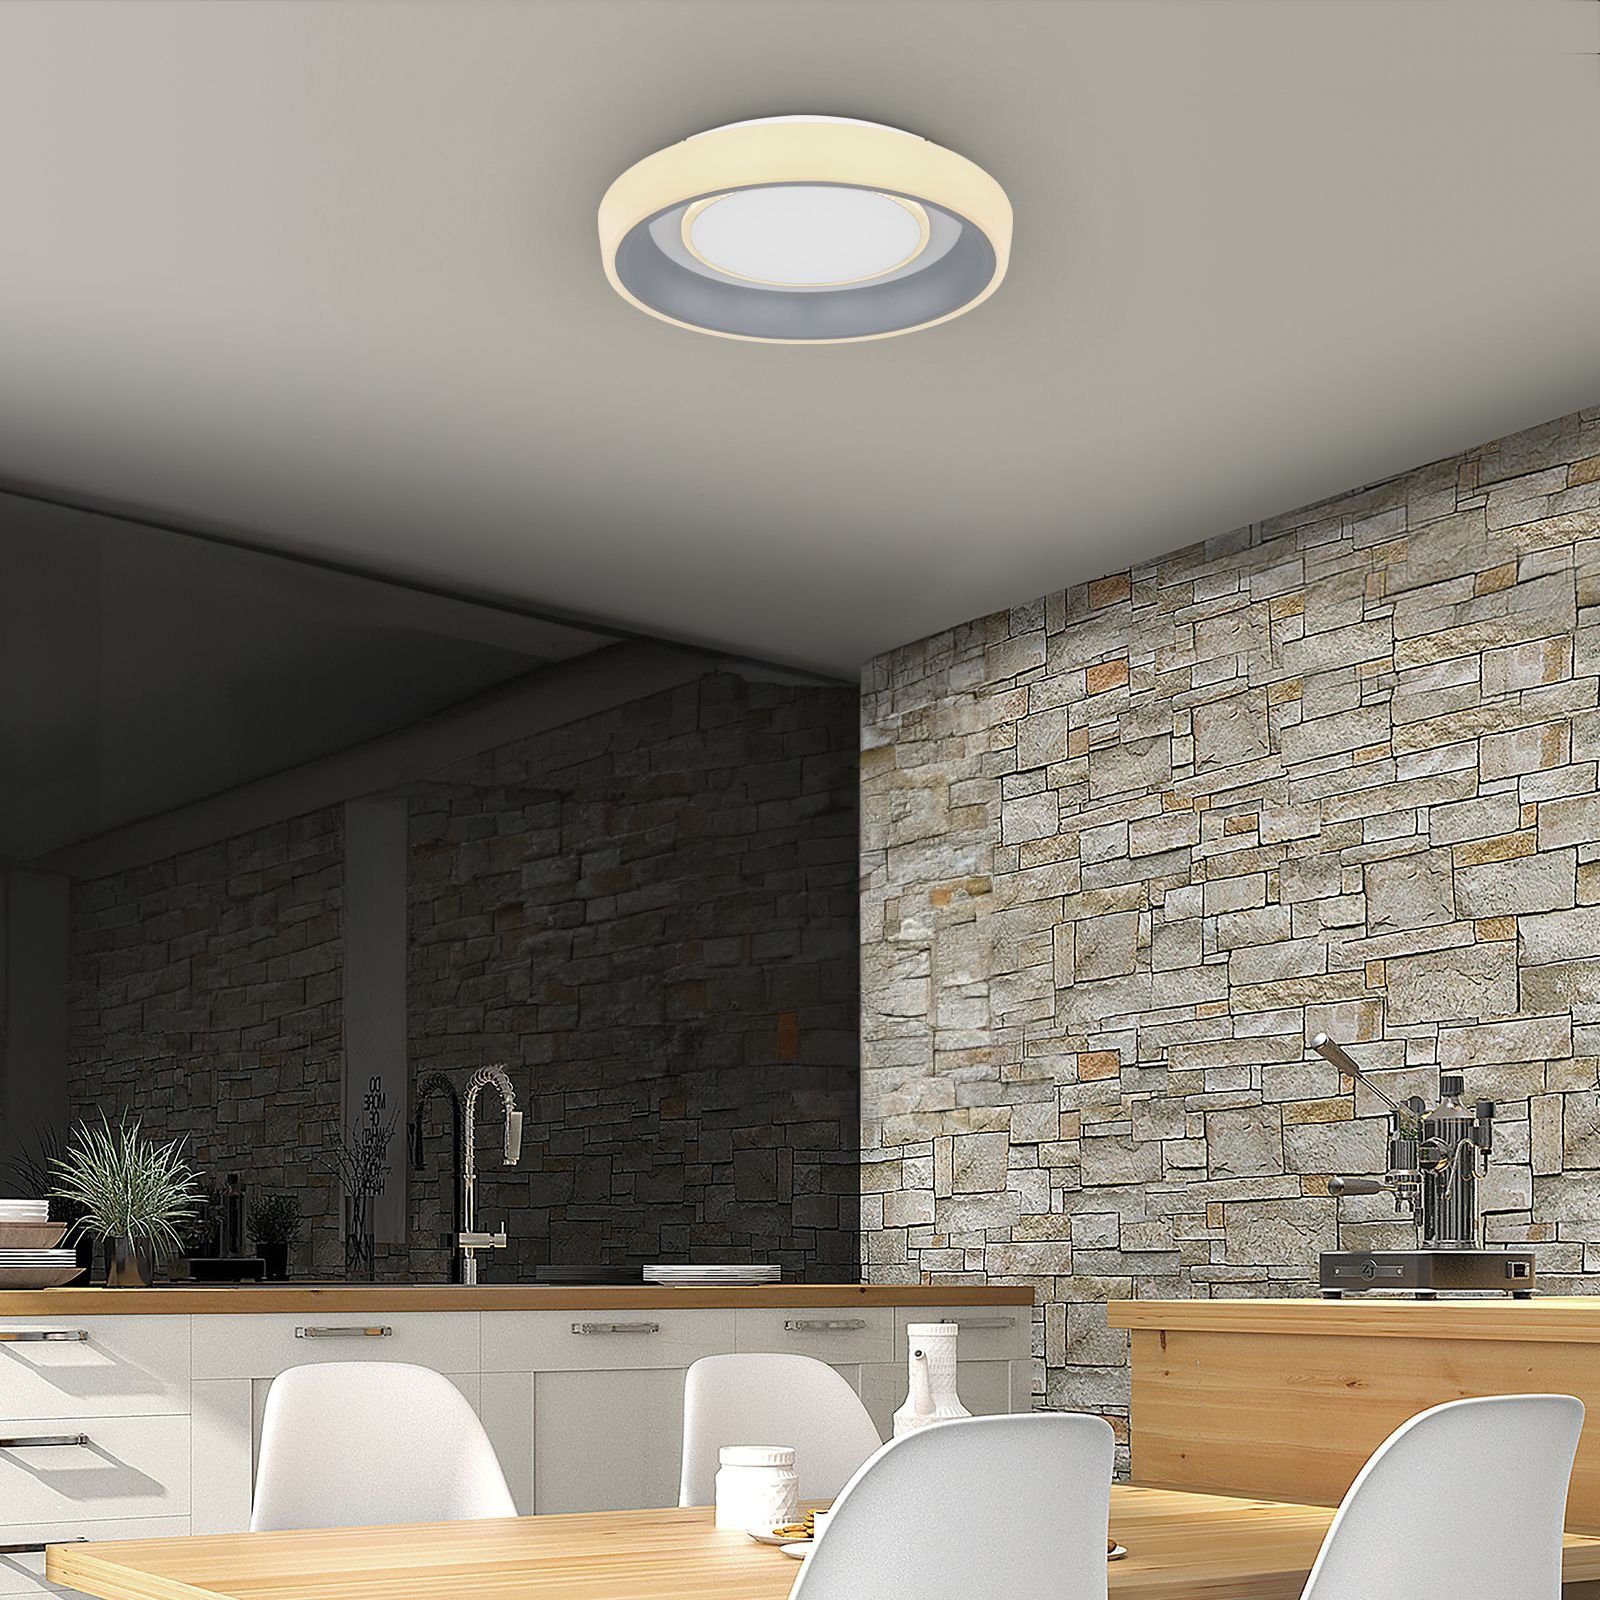 GLOBO Deckenleuchte Wohnzimmer Globo Dimmbar LED Fernbedienung Deckenleuchte Deckenlampe